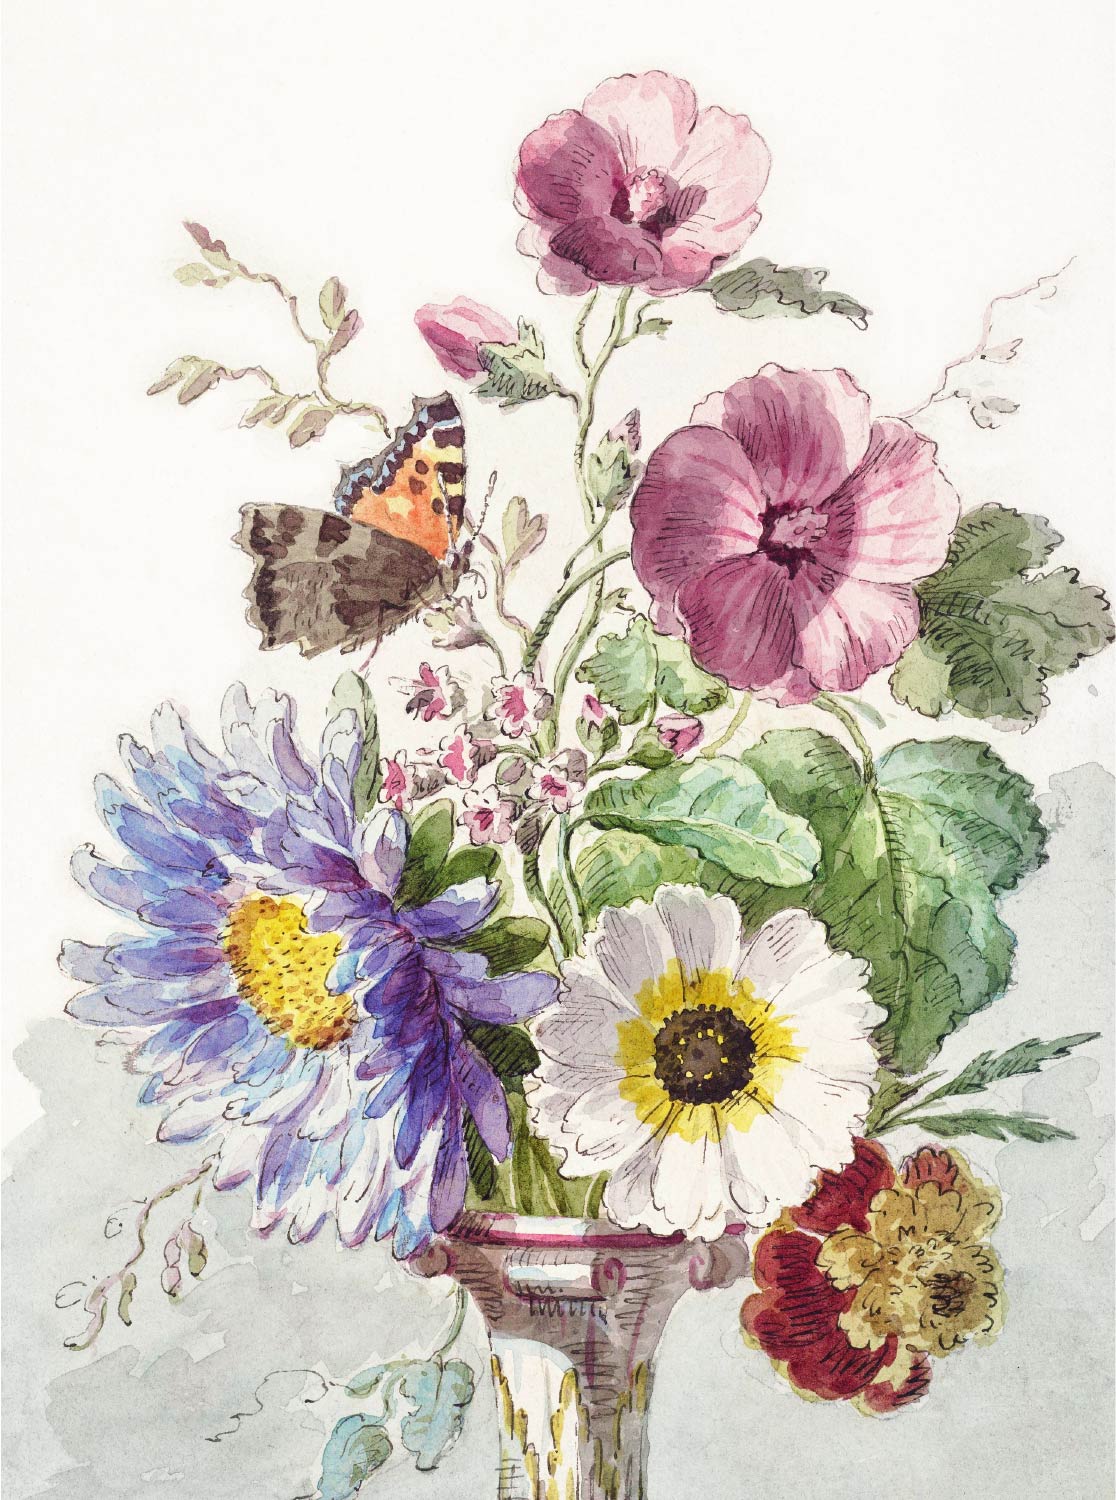 【無料壁紙】ウィレム・ファン・リーン「蝶のいる花束 (1763-1825)」 / Willem van Leen_Bouquet of Flowers with a Butterfly (1763-1825)